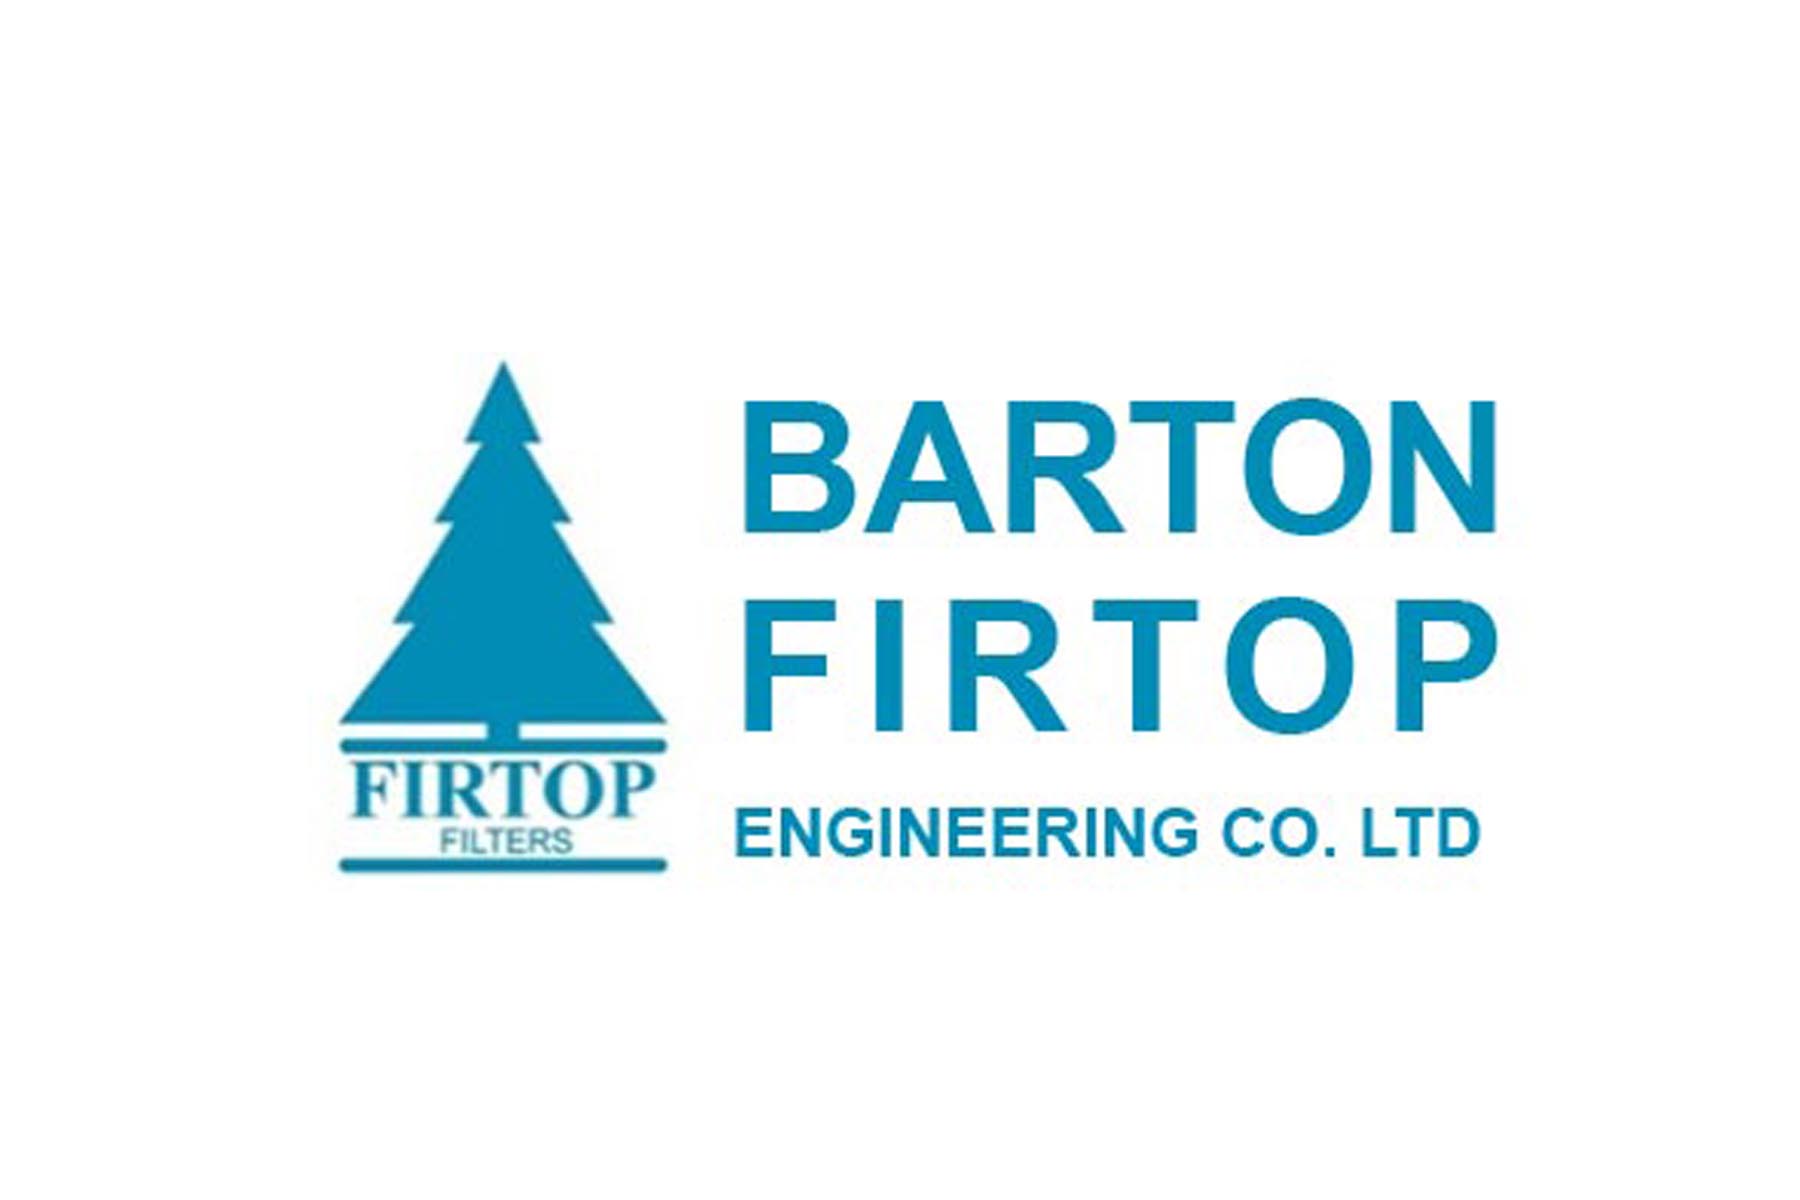 Barton Firtop